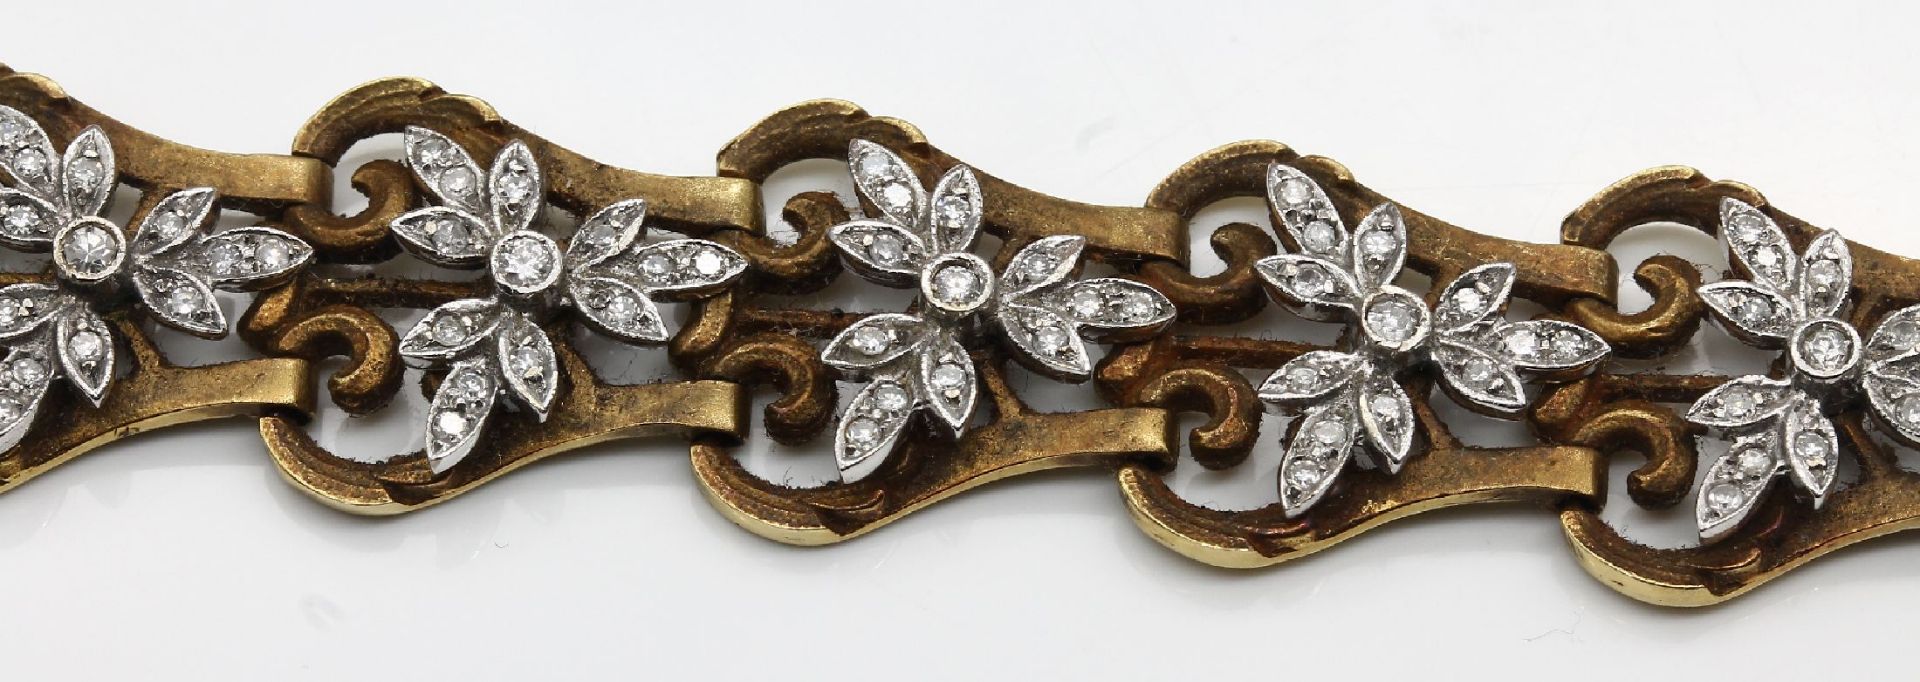 18 kt Gold Armband mit Diamanten, Frankreich um 1900, GG - Image 3 of 3